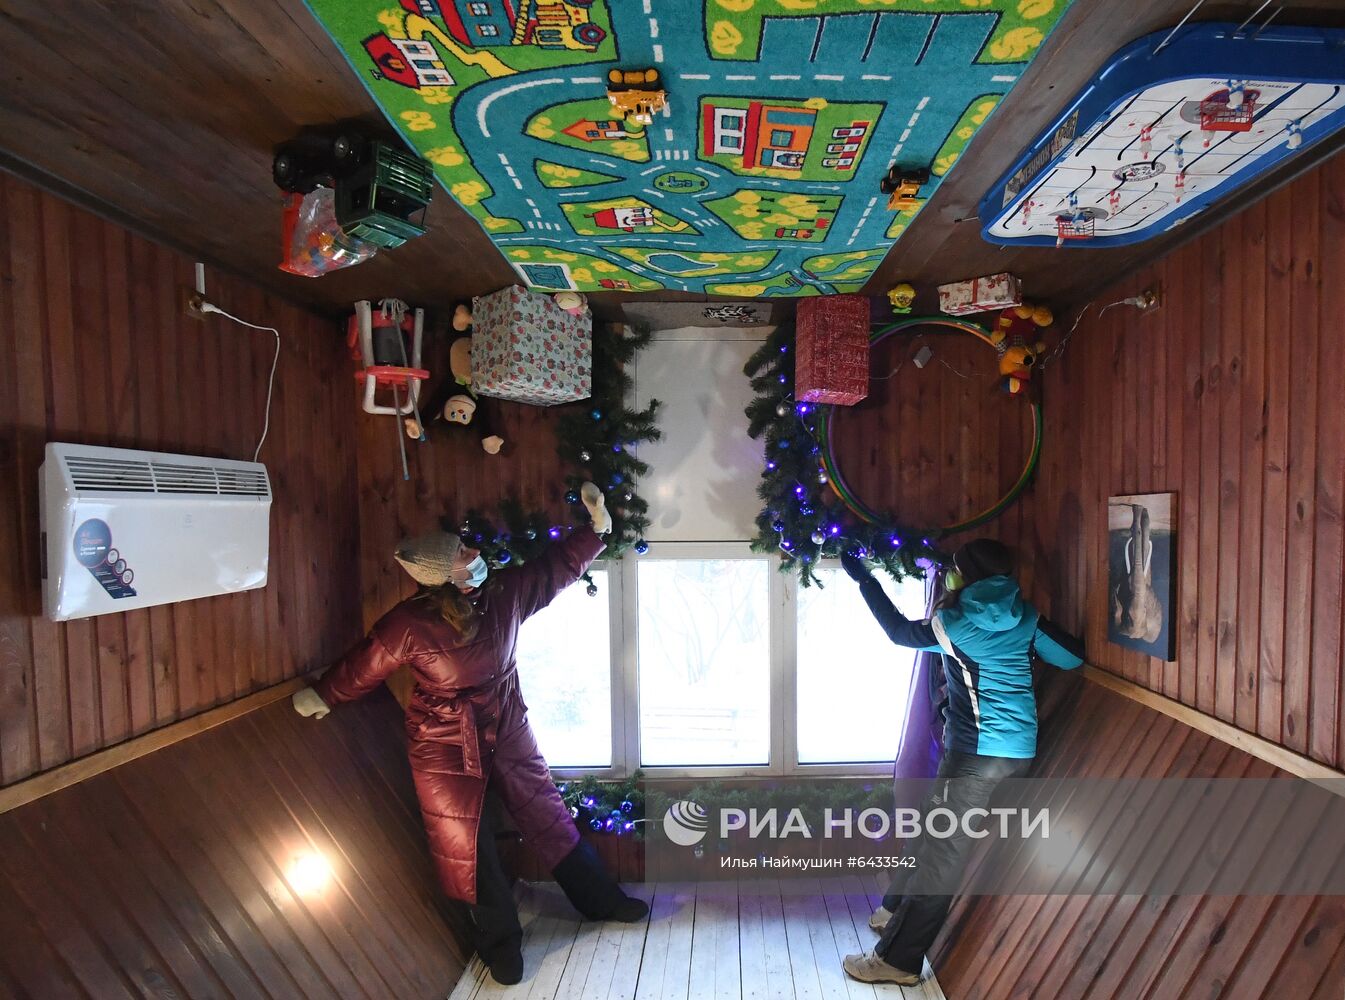 Аттракцион "Дом вверх дном" в Красноярске